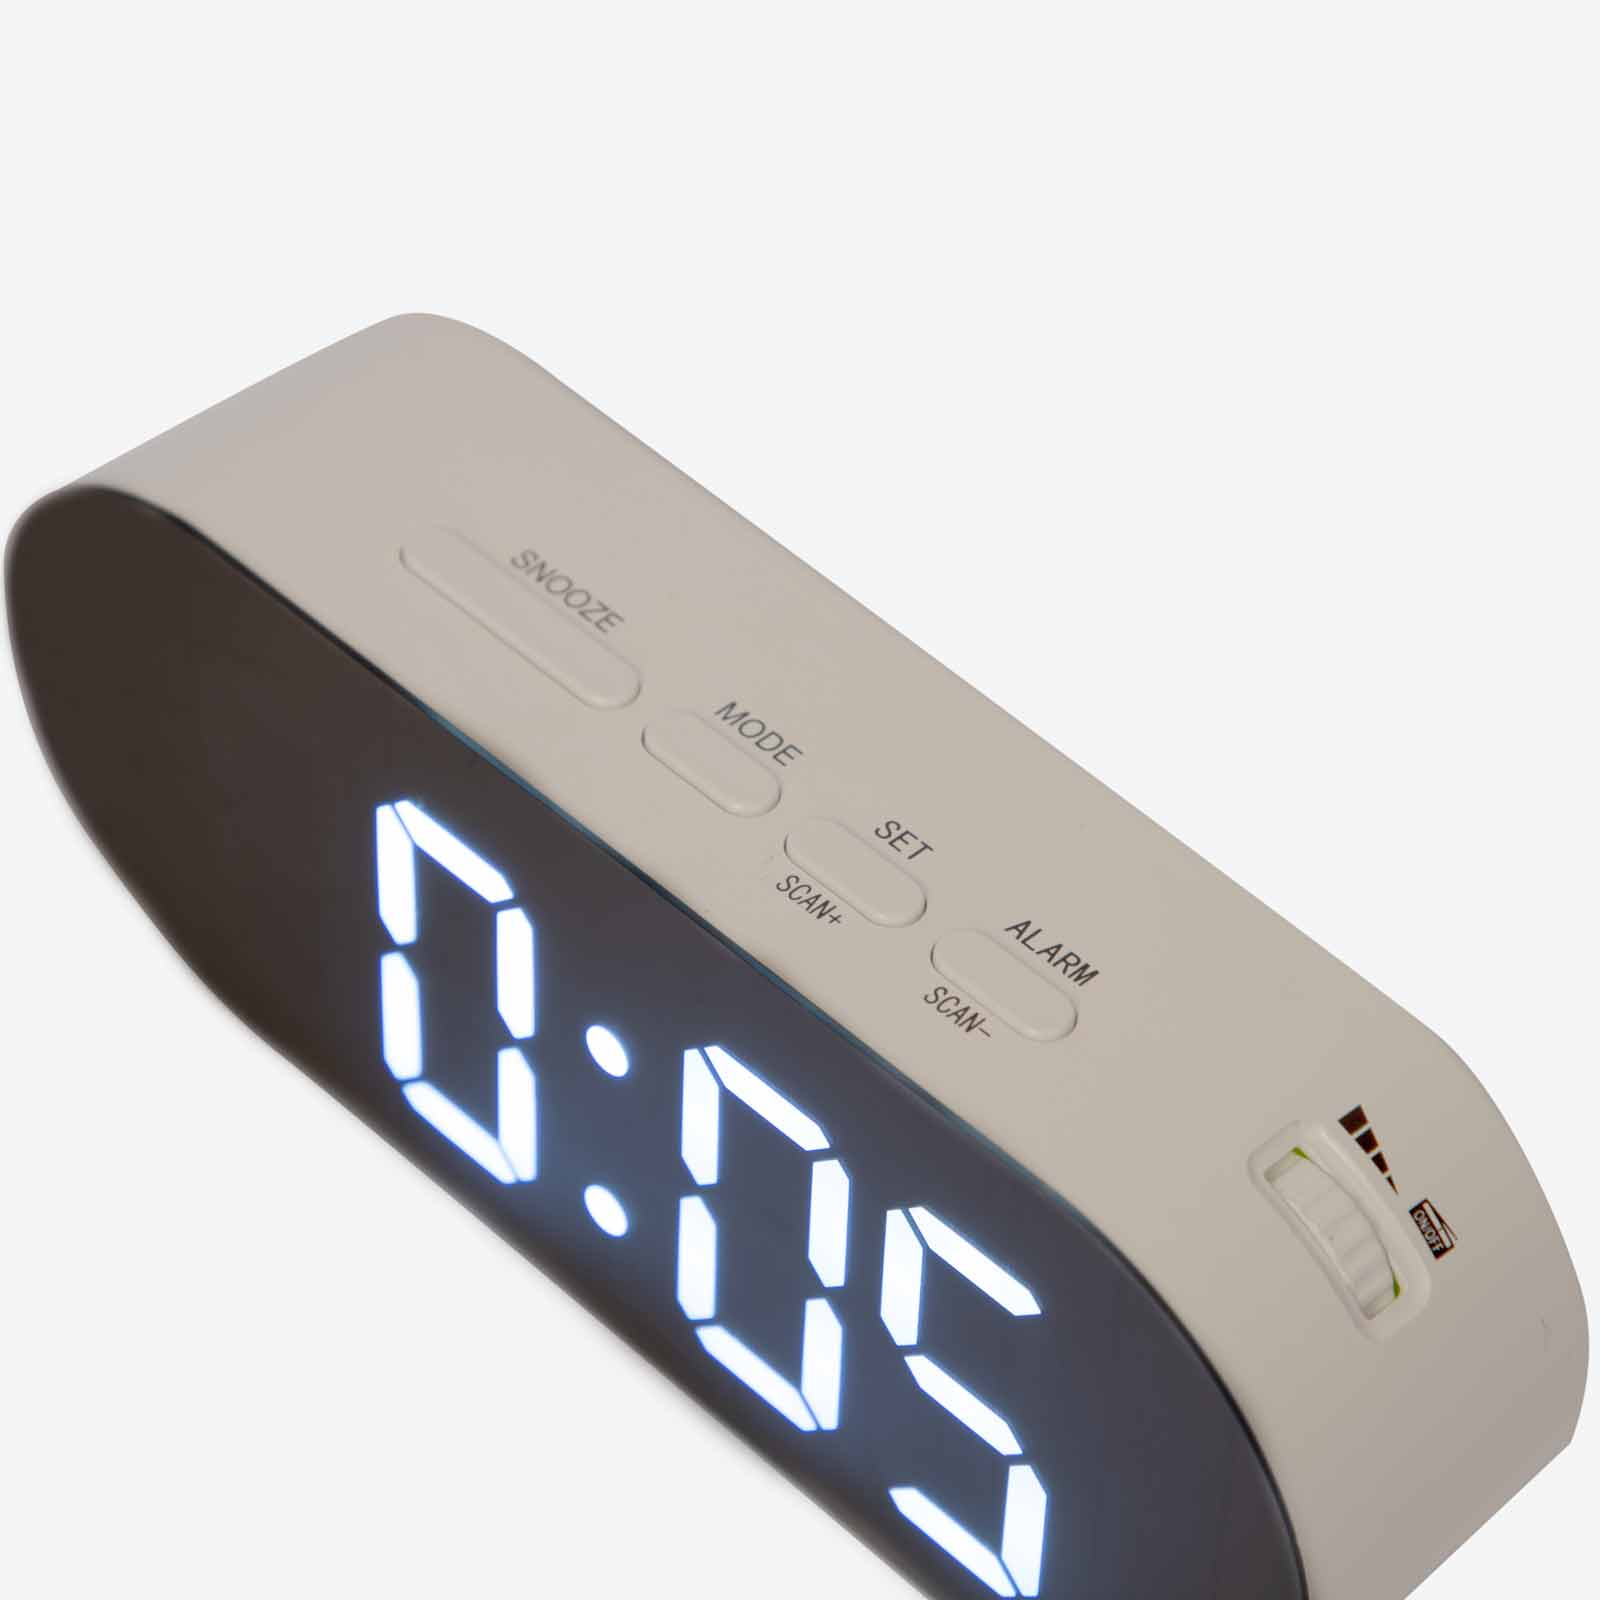 Radio despertador digital  Reloj despertador de radio digital Led